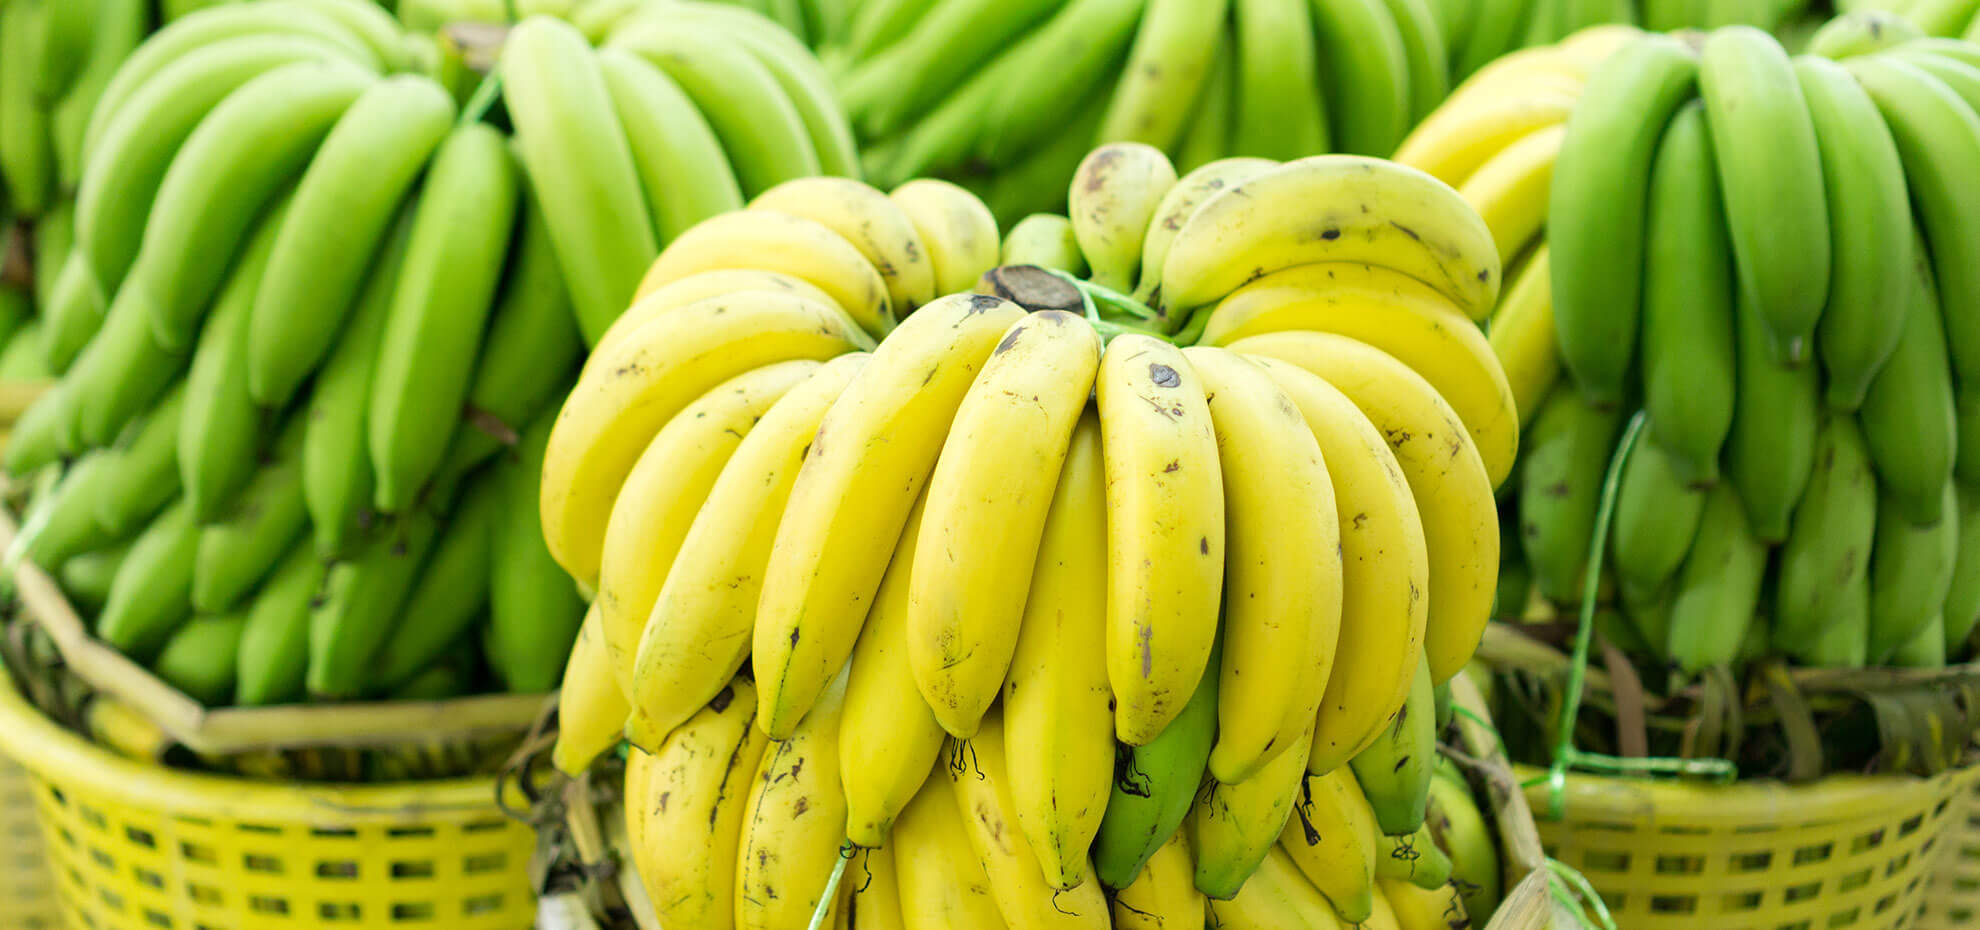 Bersisir-sisir jenis pisang berwarna kuning dan hijau dalam keranjang